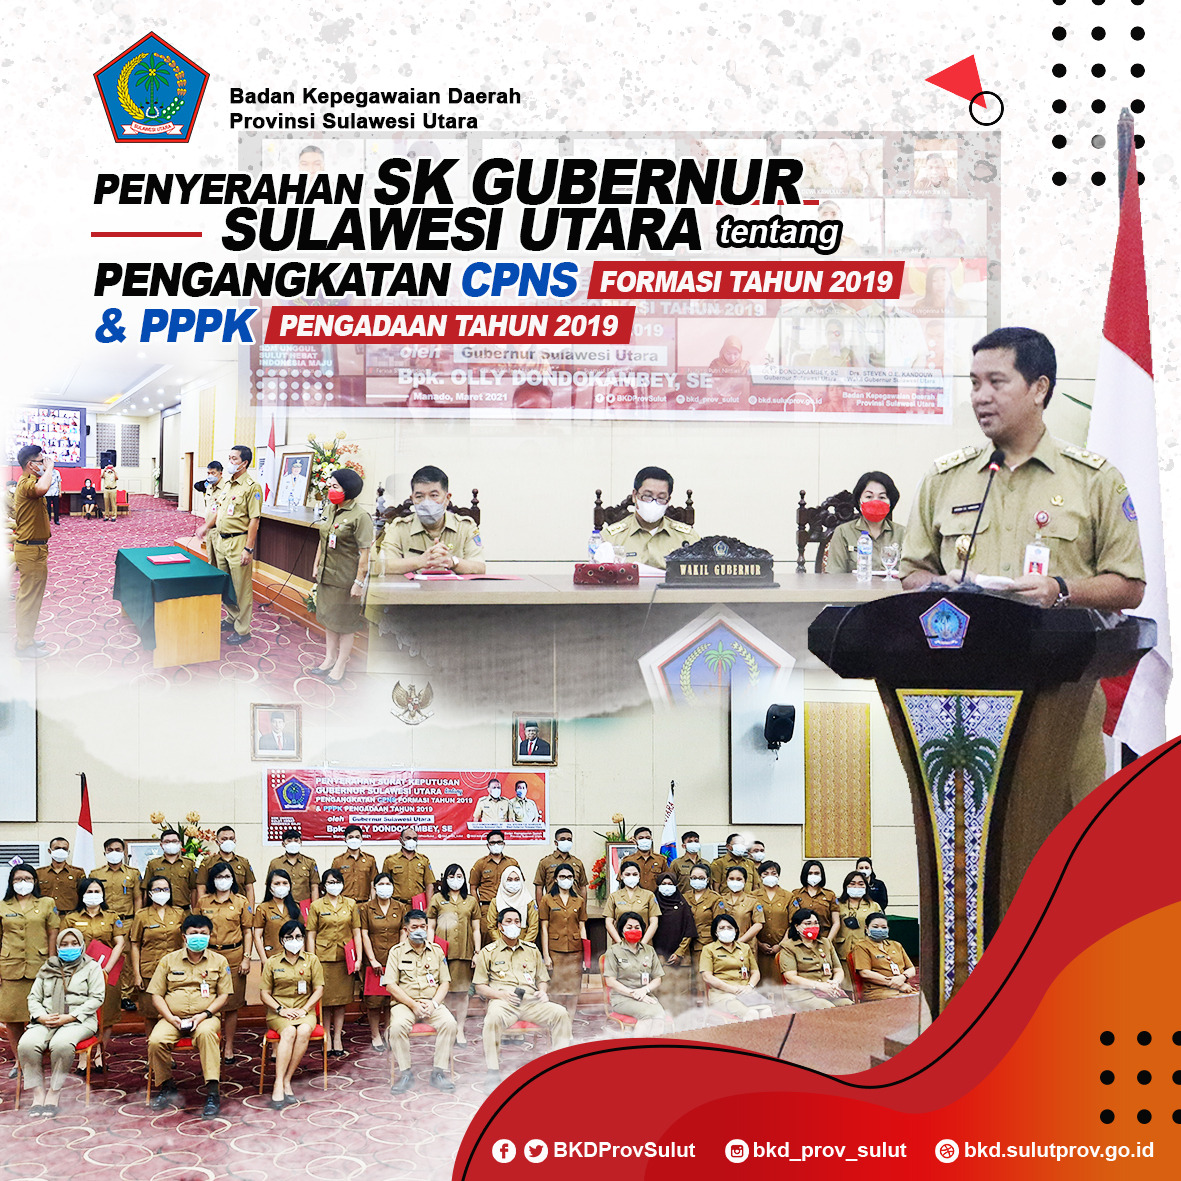 Penyerahan SK Gubernur Sulawesi Utara tentang Pengangkatan CPNS Formasi Tahun 2019 dan PPPK Pengadaan Tahun 2019